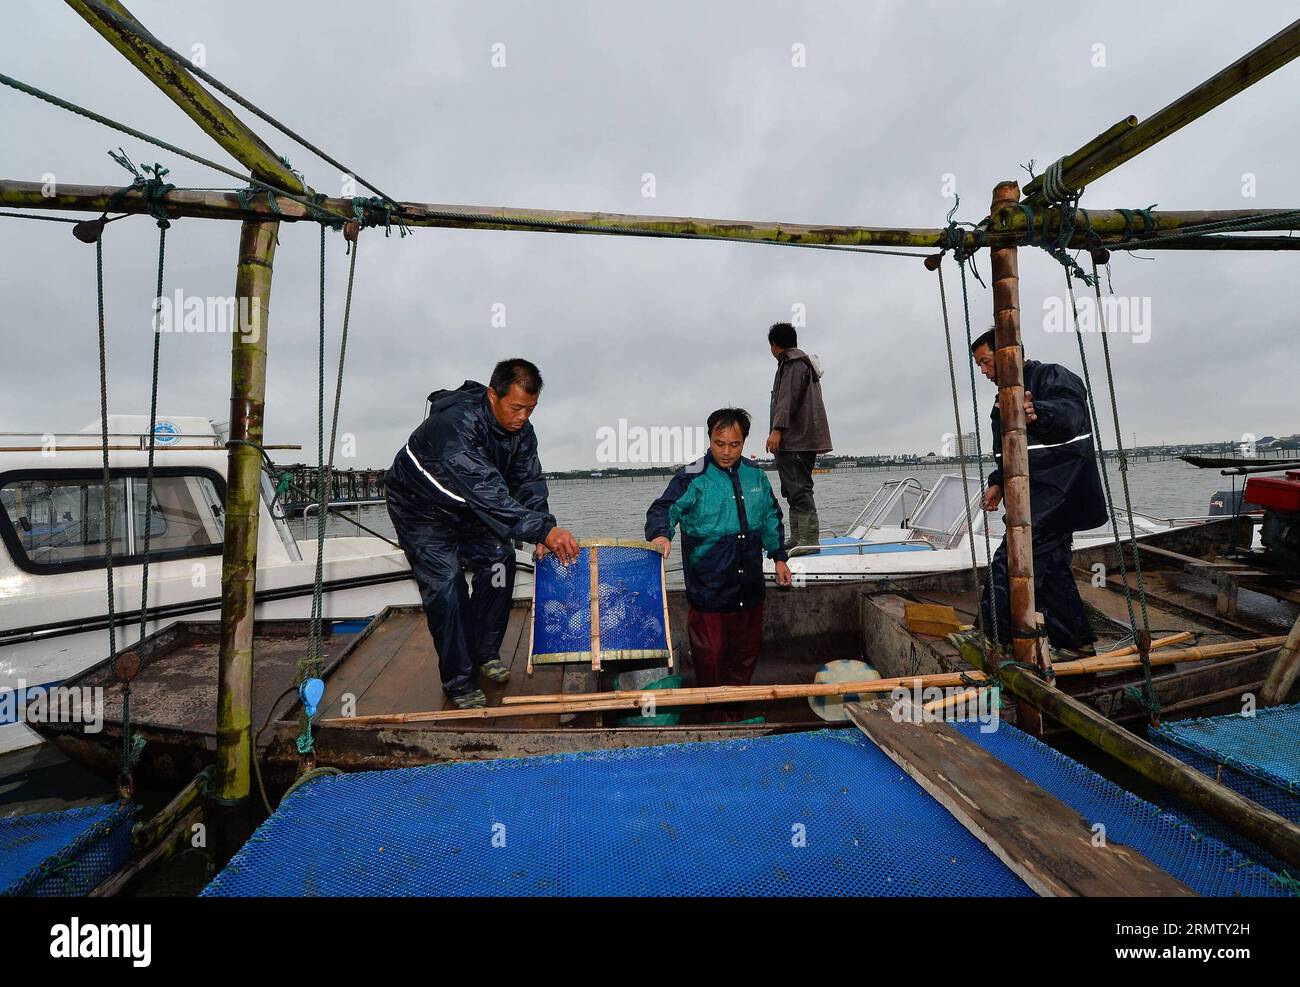 (140923) -- KUNSHAN, 23 septembre 2014 -- des pêcheurs transportent des crabes chinois récoltés sur le lac Yangcheng dans la ville de Bacheng à Kunshan, dans la province du Jiangsu, dans l est de la Chine, le 23 septembre 2014. La saison de récolte 2014 pour le crabe moufle chinois (Eriocheir sinensis) dans le lac Yangcheng, une importante zone productrice, a débuté mardi. Aussi connu comme le grand crabe d'écluse, les crabes chinois à moufles sont favorisés par de nombreux amateurs de gourmets et se vendent bien en ligne et sur les marchés réels ) (wjq) CHINA-JIANGSU-FISHERY-YANGCHENG LAKE-CHINESE MITTEN CRABE-MOISSON (CN) LixXiang PUBLICATIONxNOTxINxCHN Kunshan sept 23 2014 Fisherm Banque D'Images